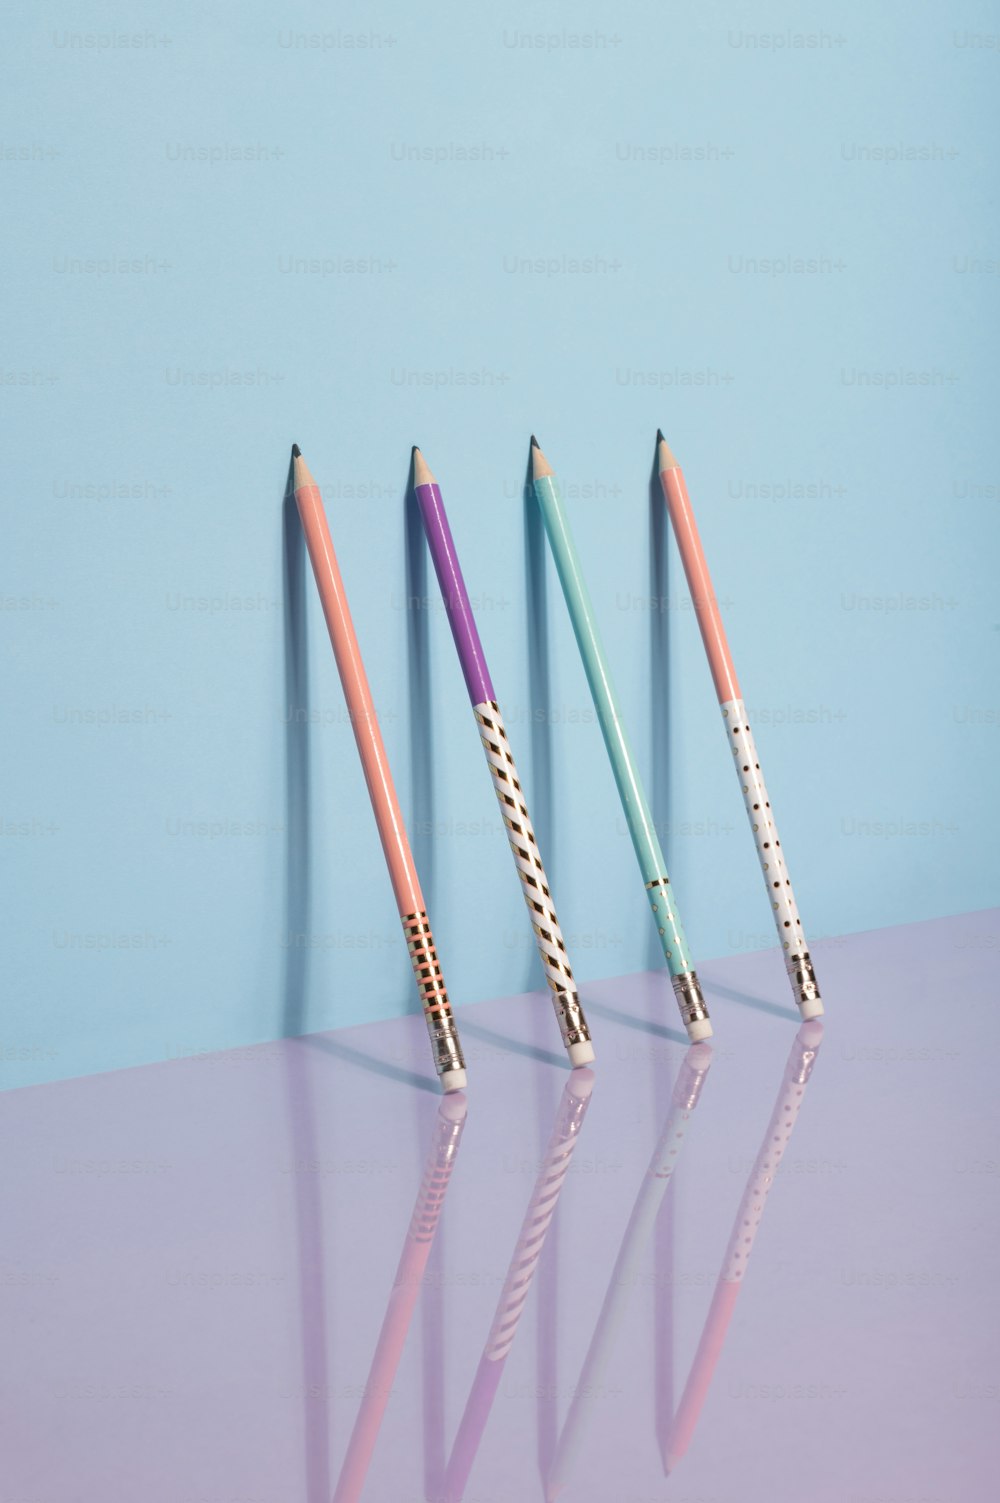 Drei verschiedenfarbige Stifte sind in einer Reihe aufgereiht